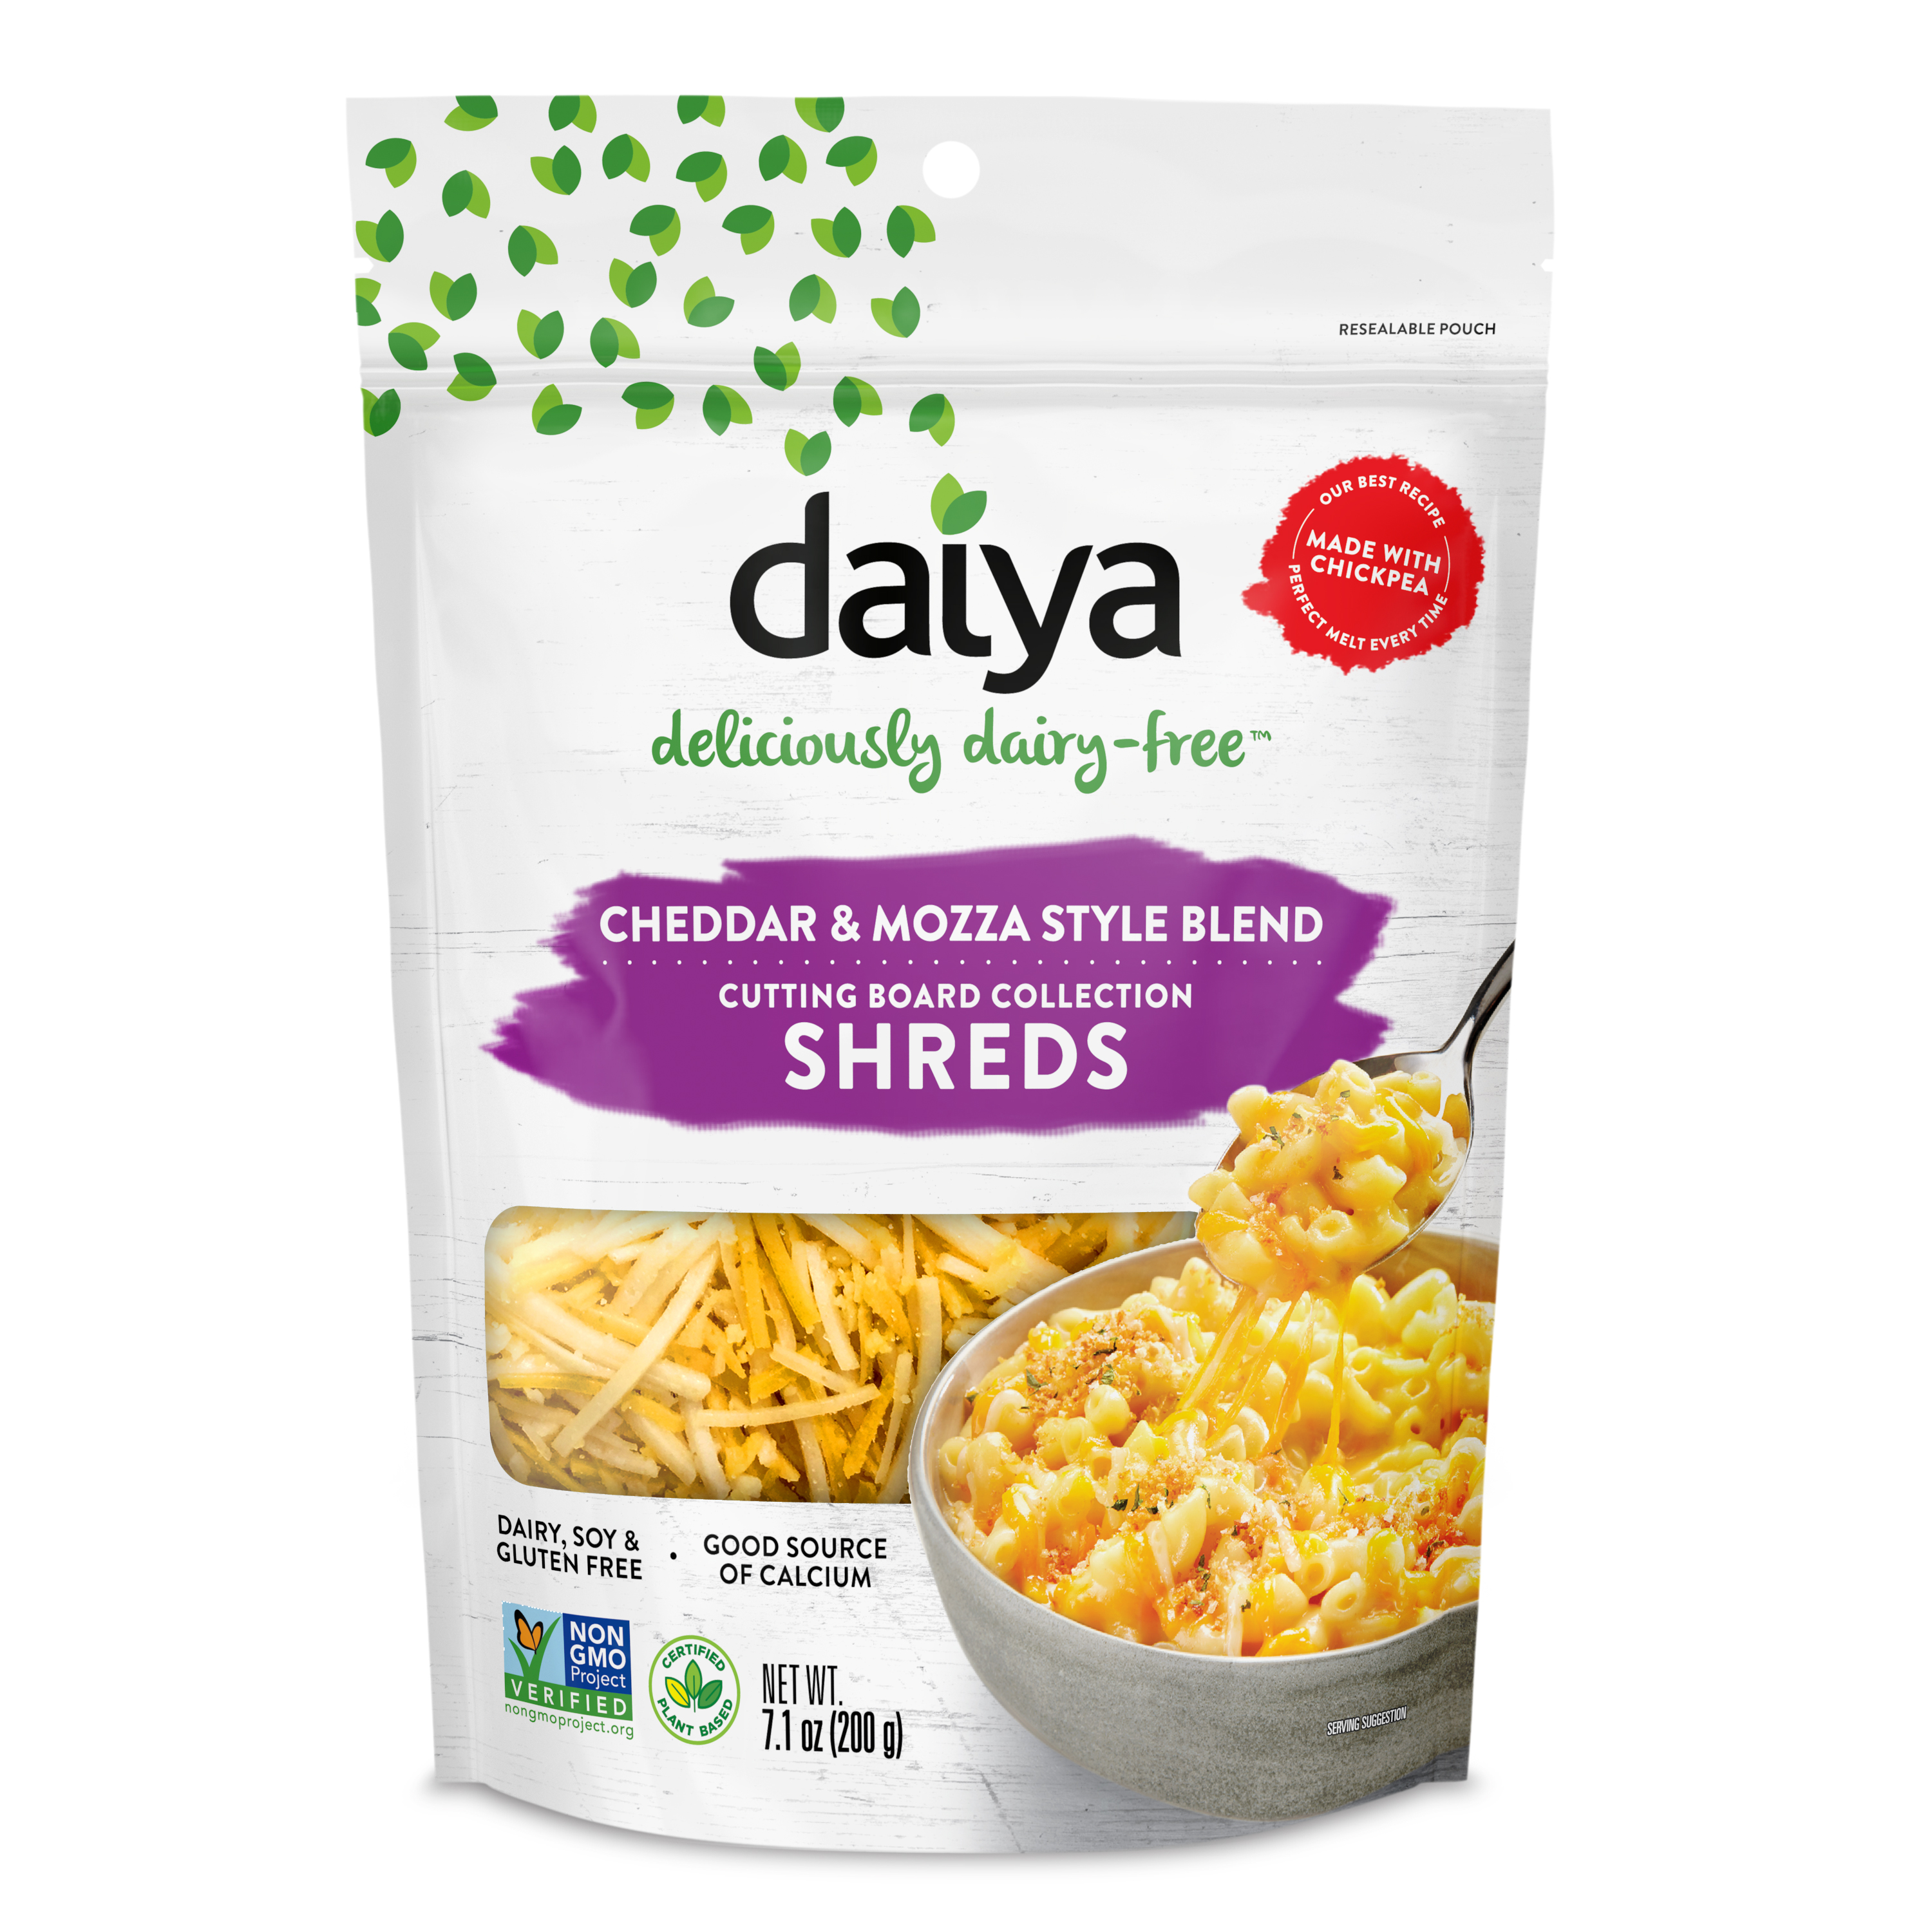 Daiya Foods Cutting Board Cheddar and Mozza Style Blend Shreds 12 units per case 202 g